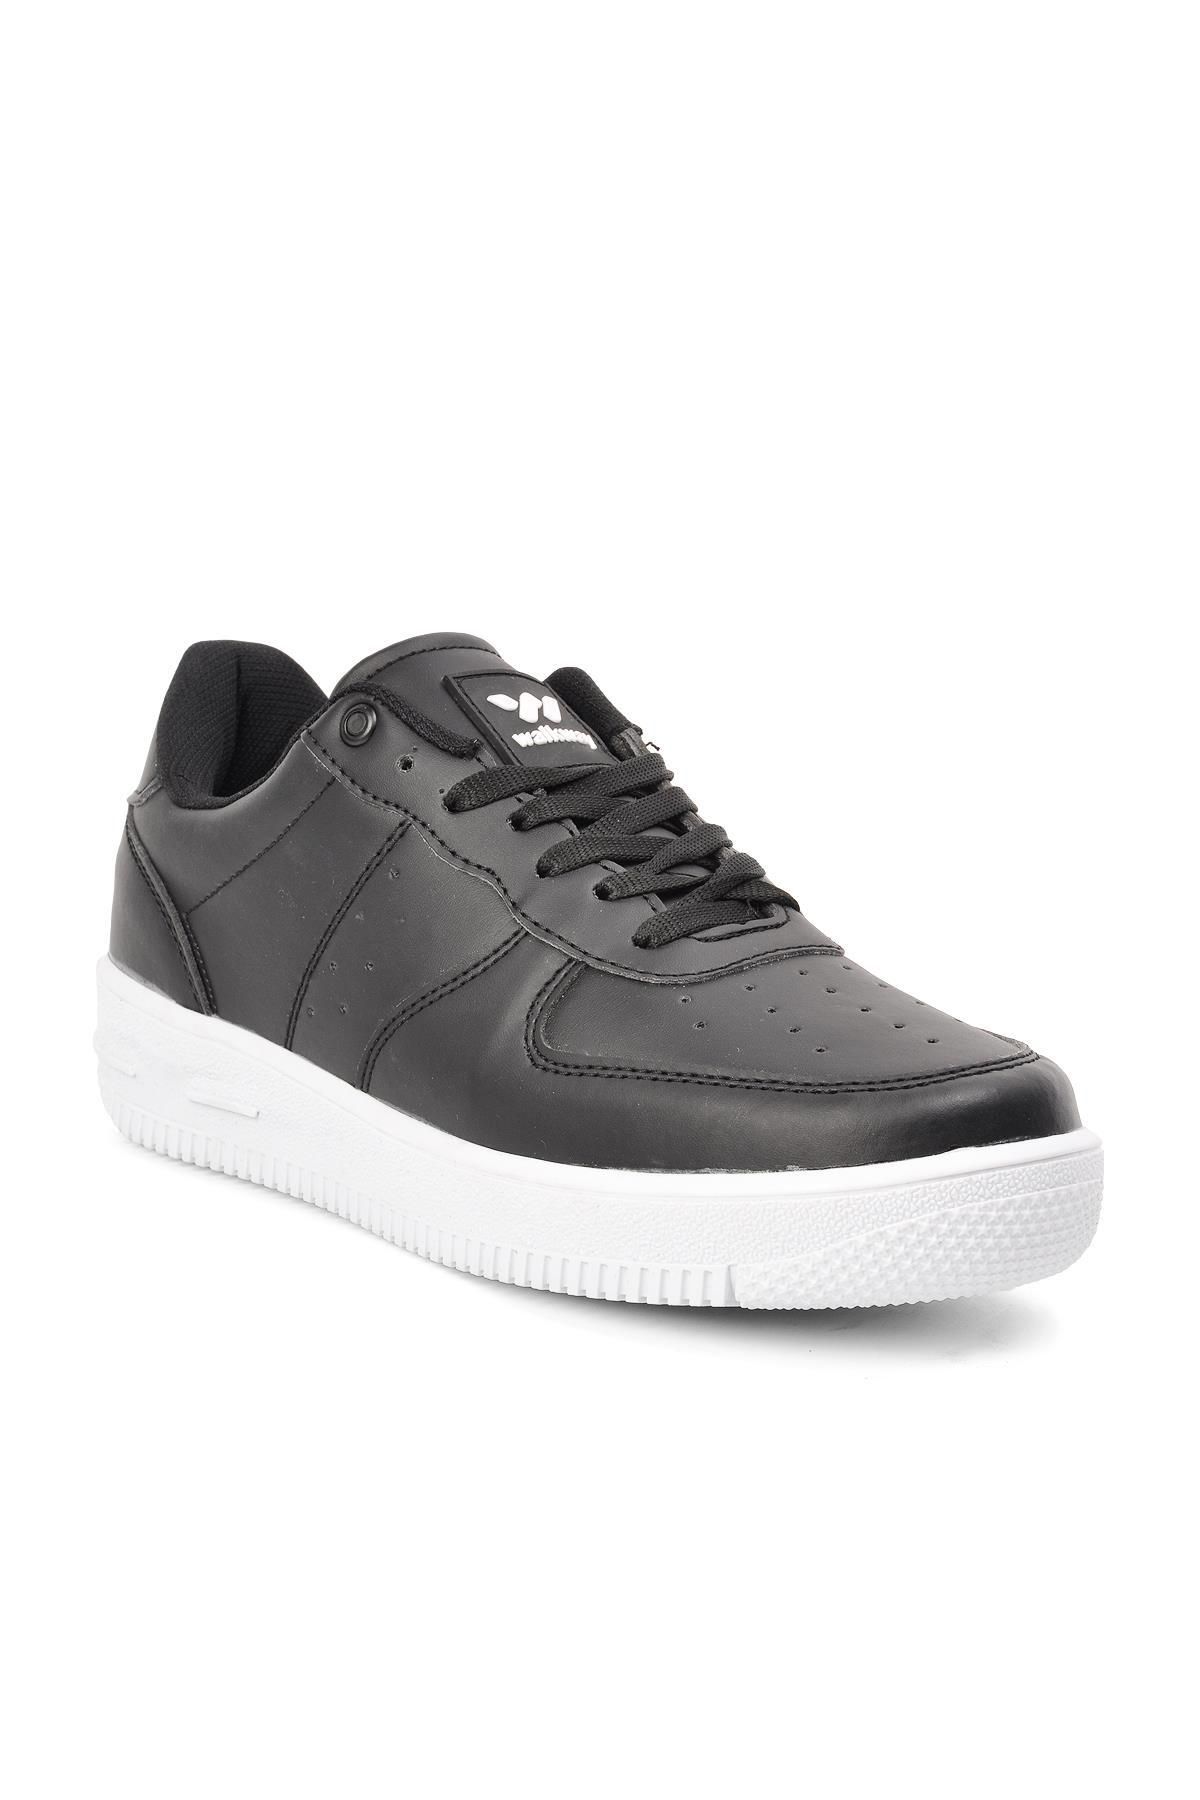 WALKWAY Bern Siyah-beyaz Unisex Spor Ayakkabı